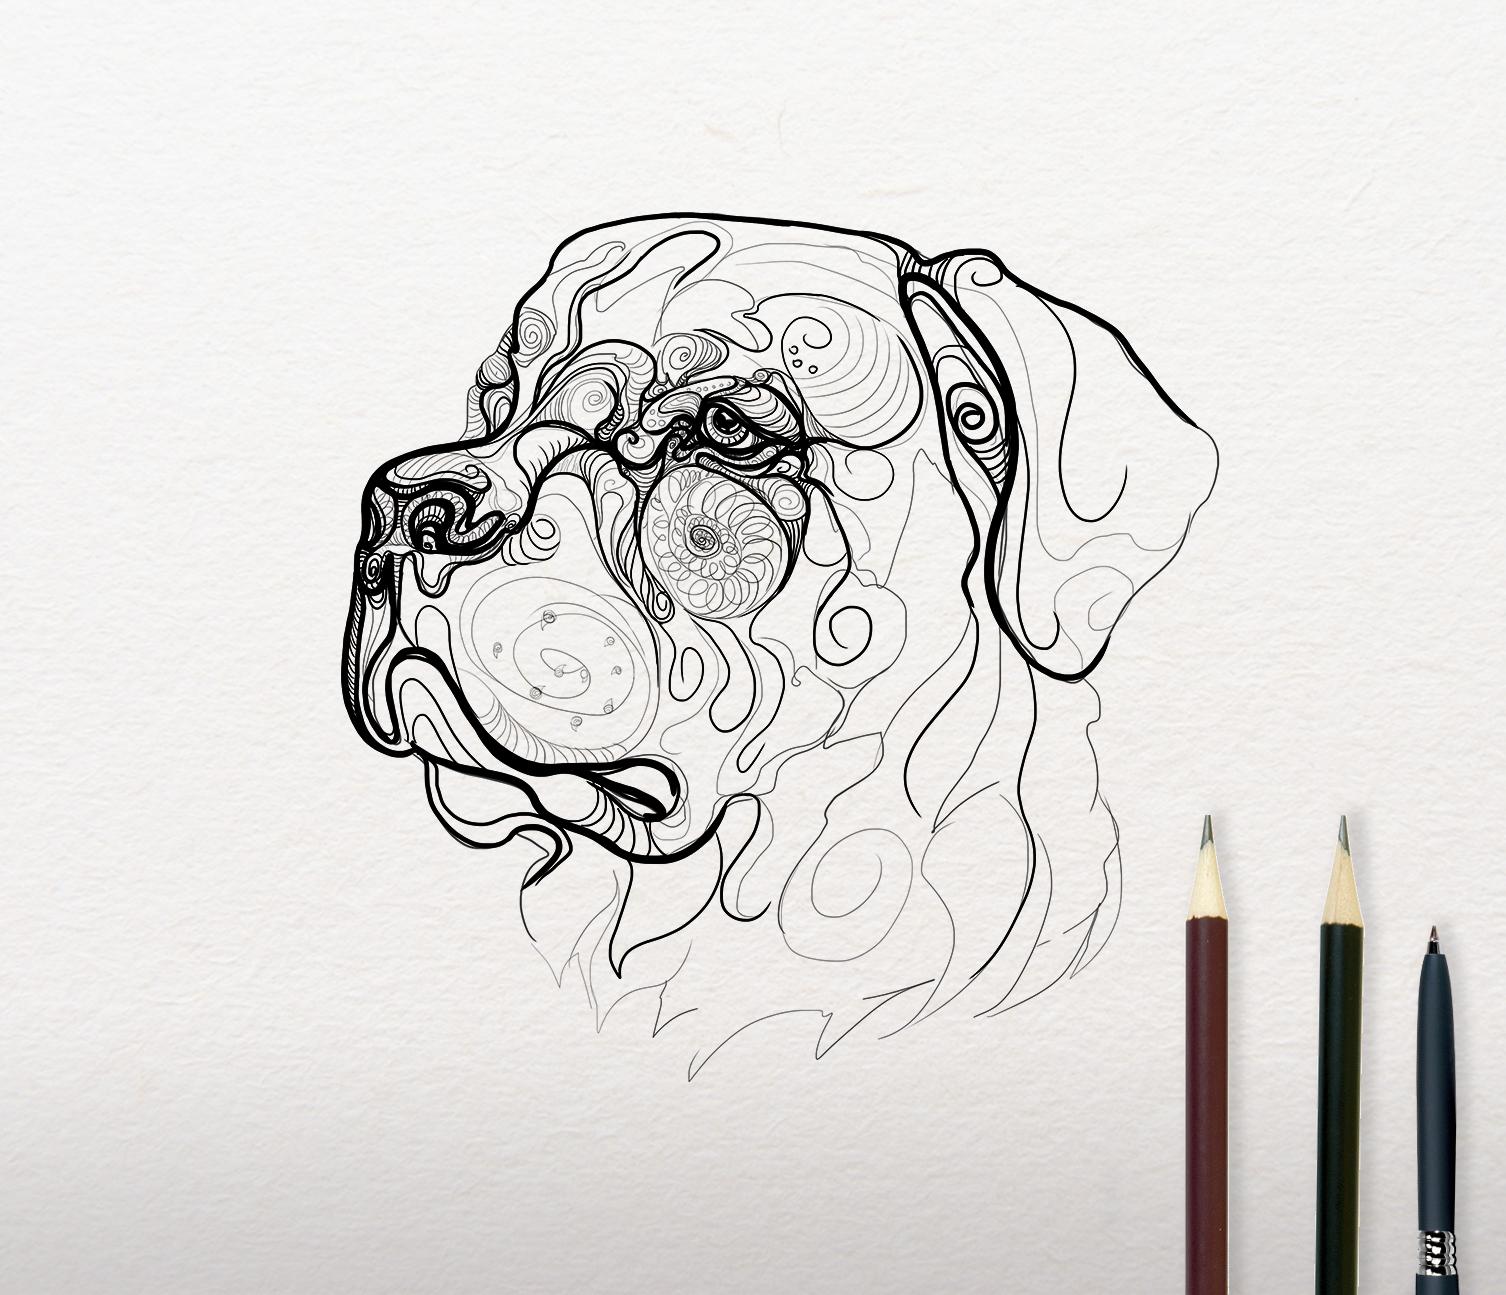 Sketch of Rottweiler design